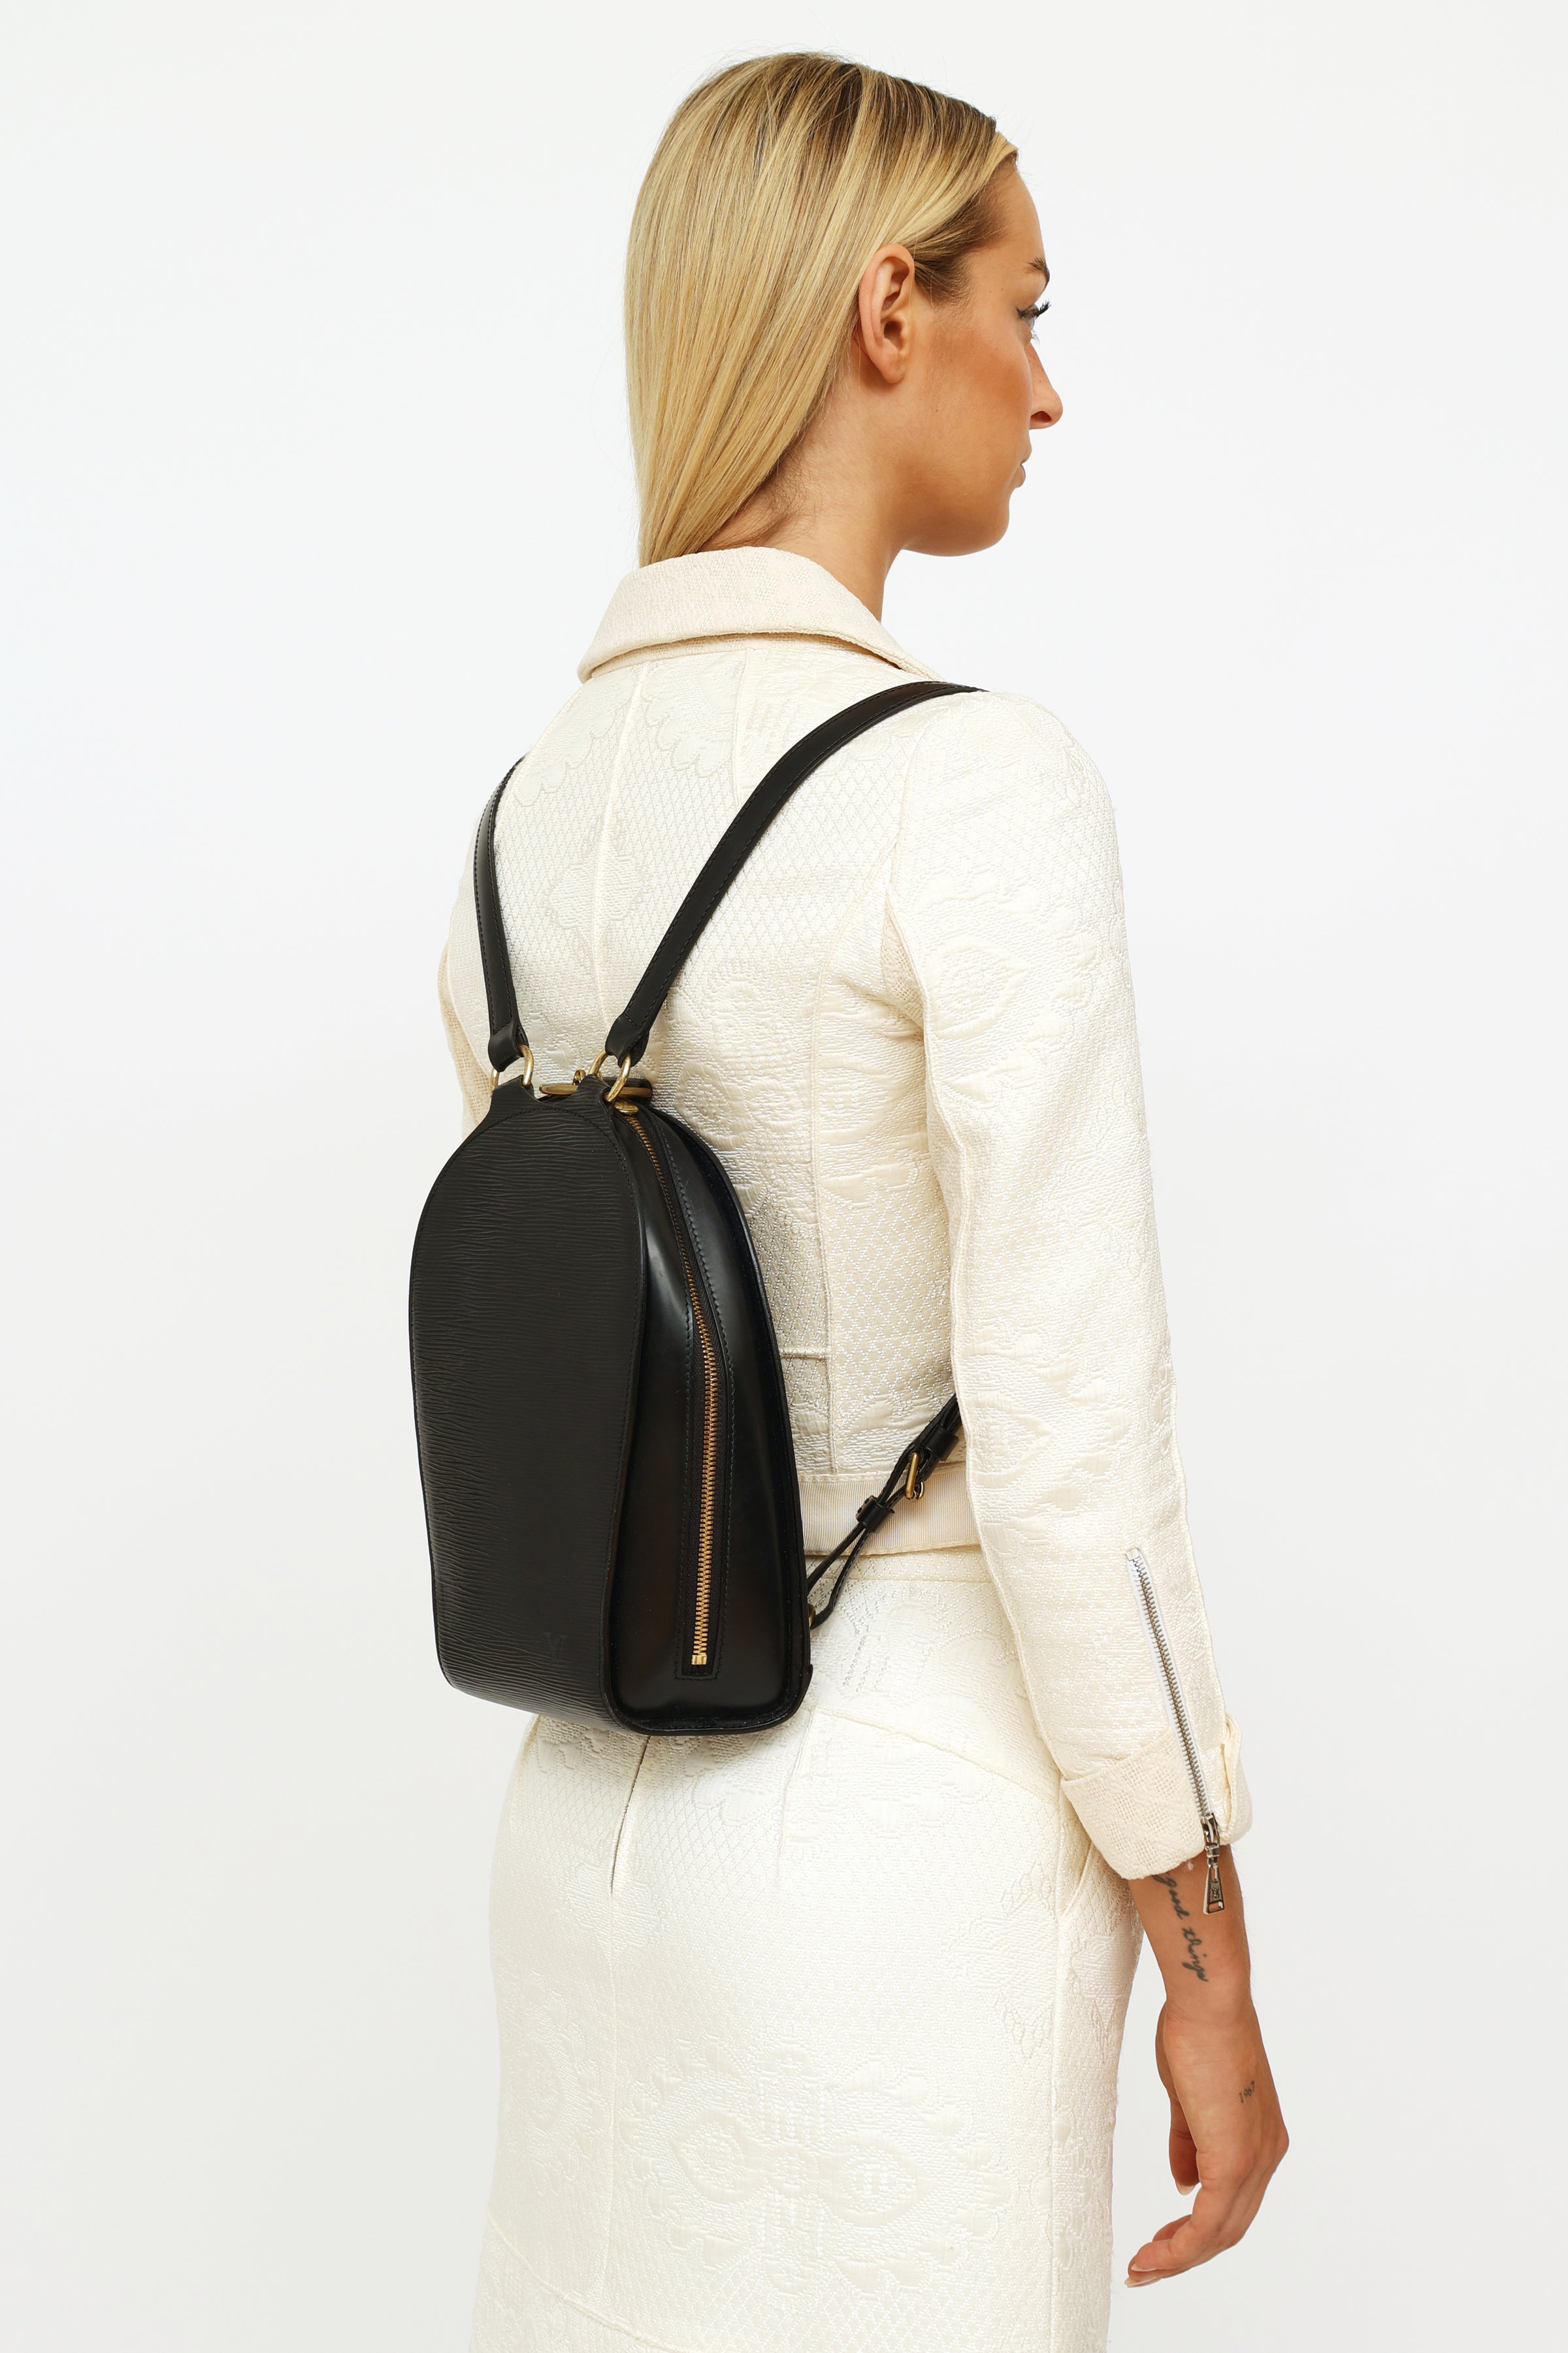 LV Mabillon Backpack – LuxuryPromise